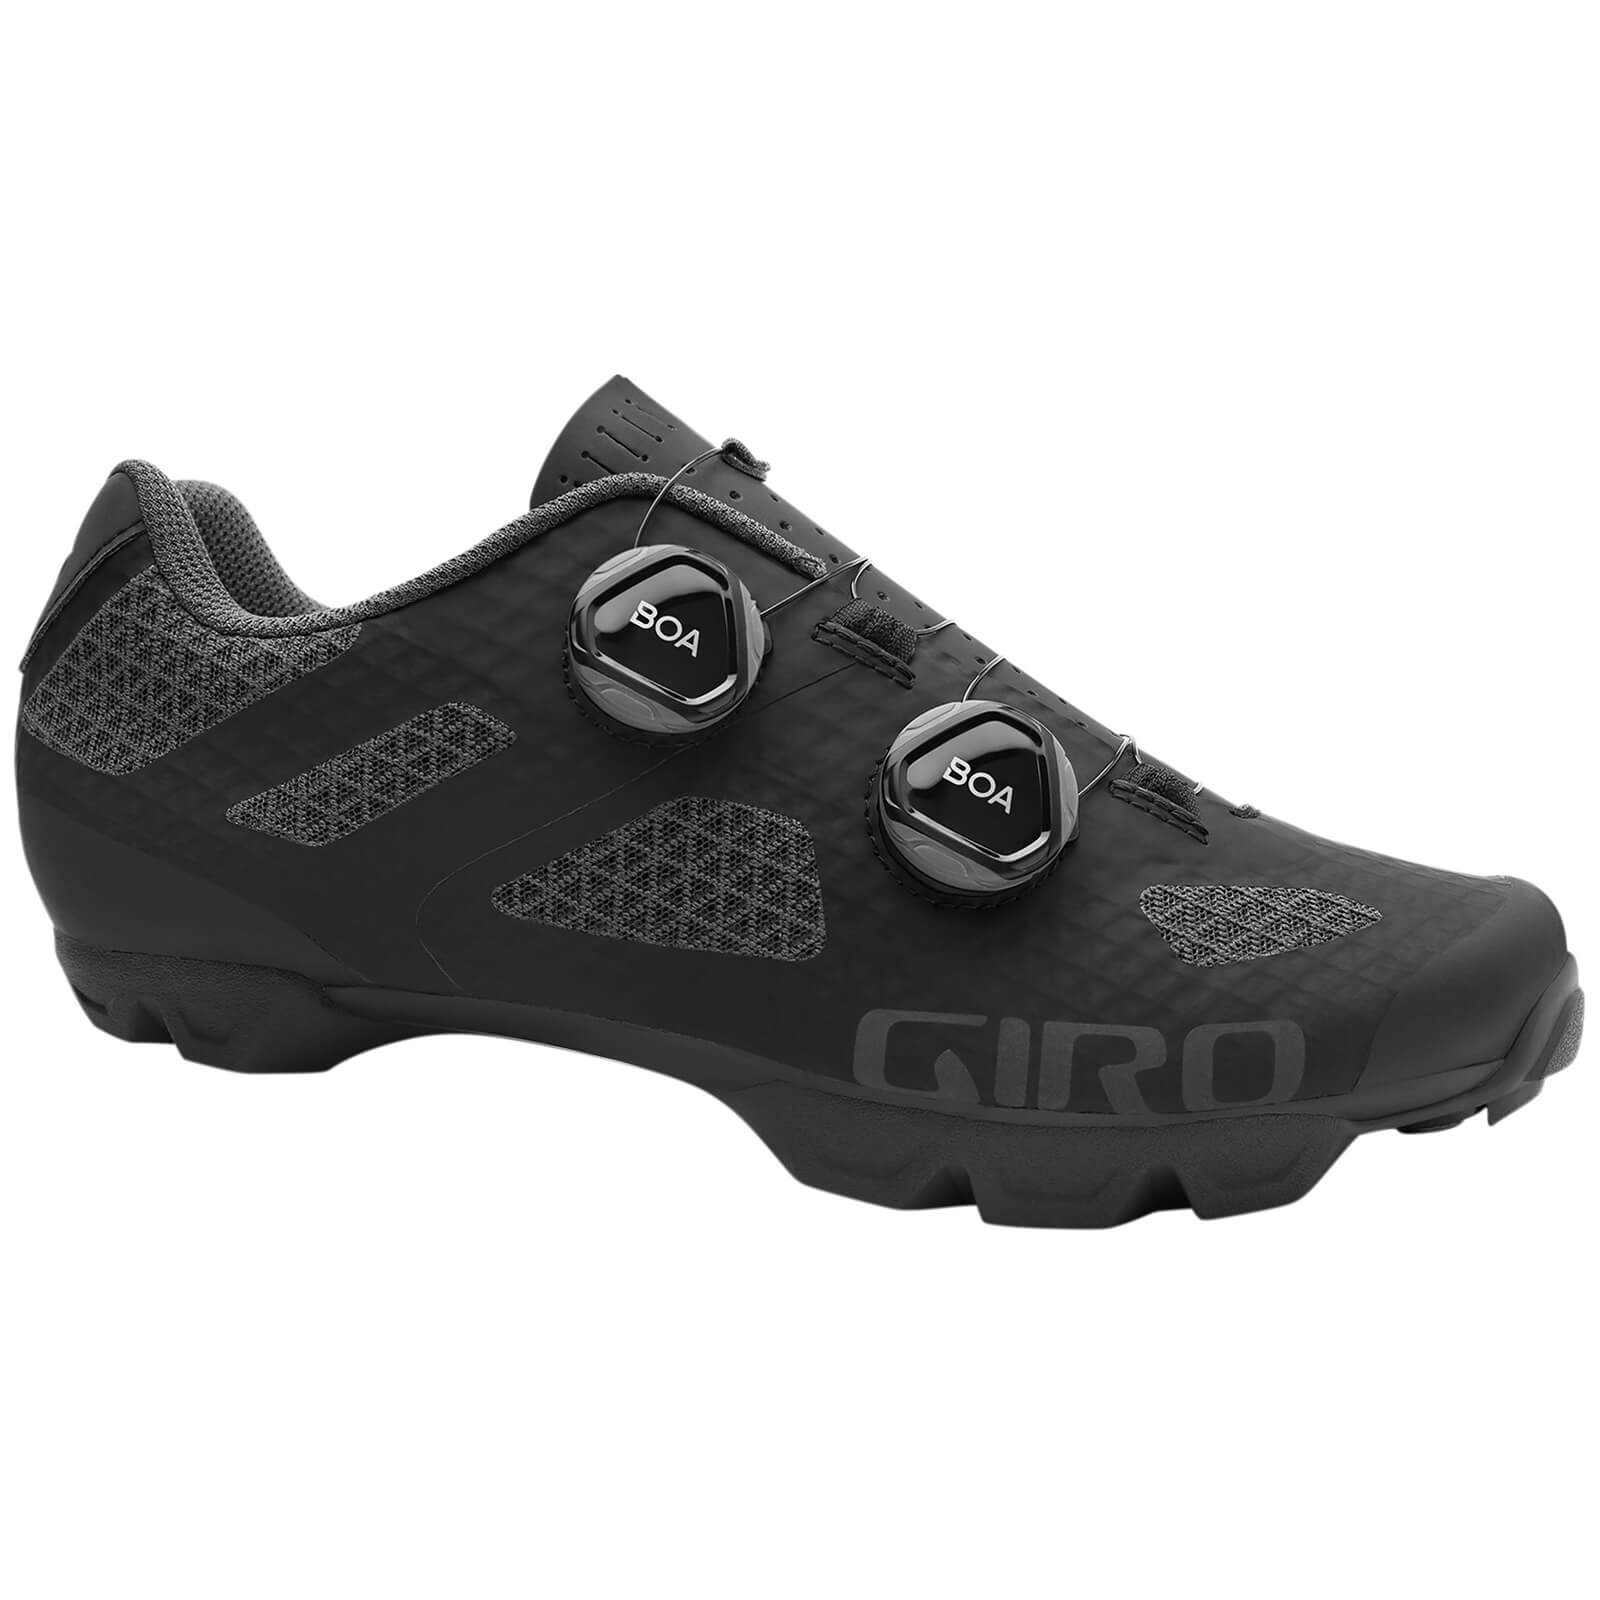 Giro Women's Sector MTB Shoes - EU 42